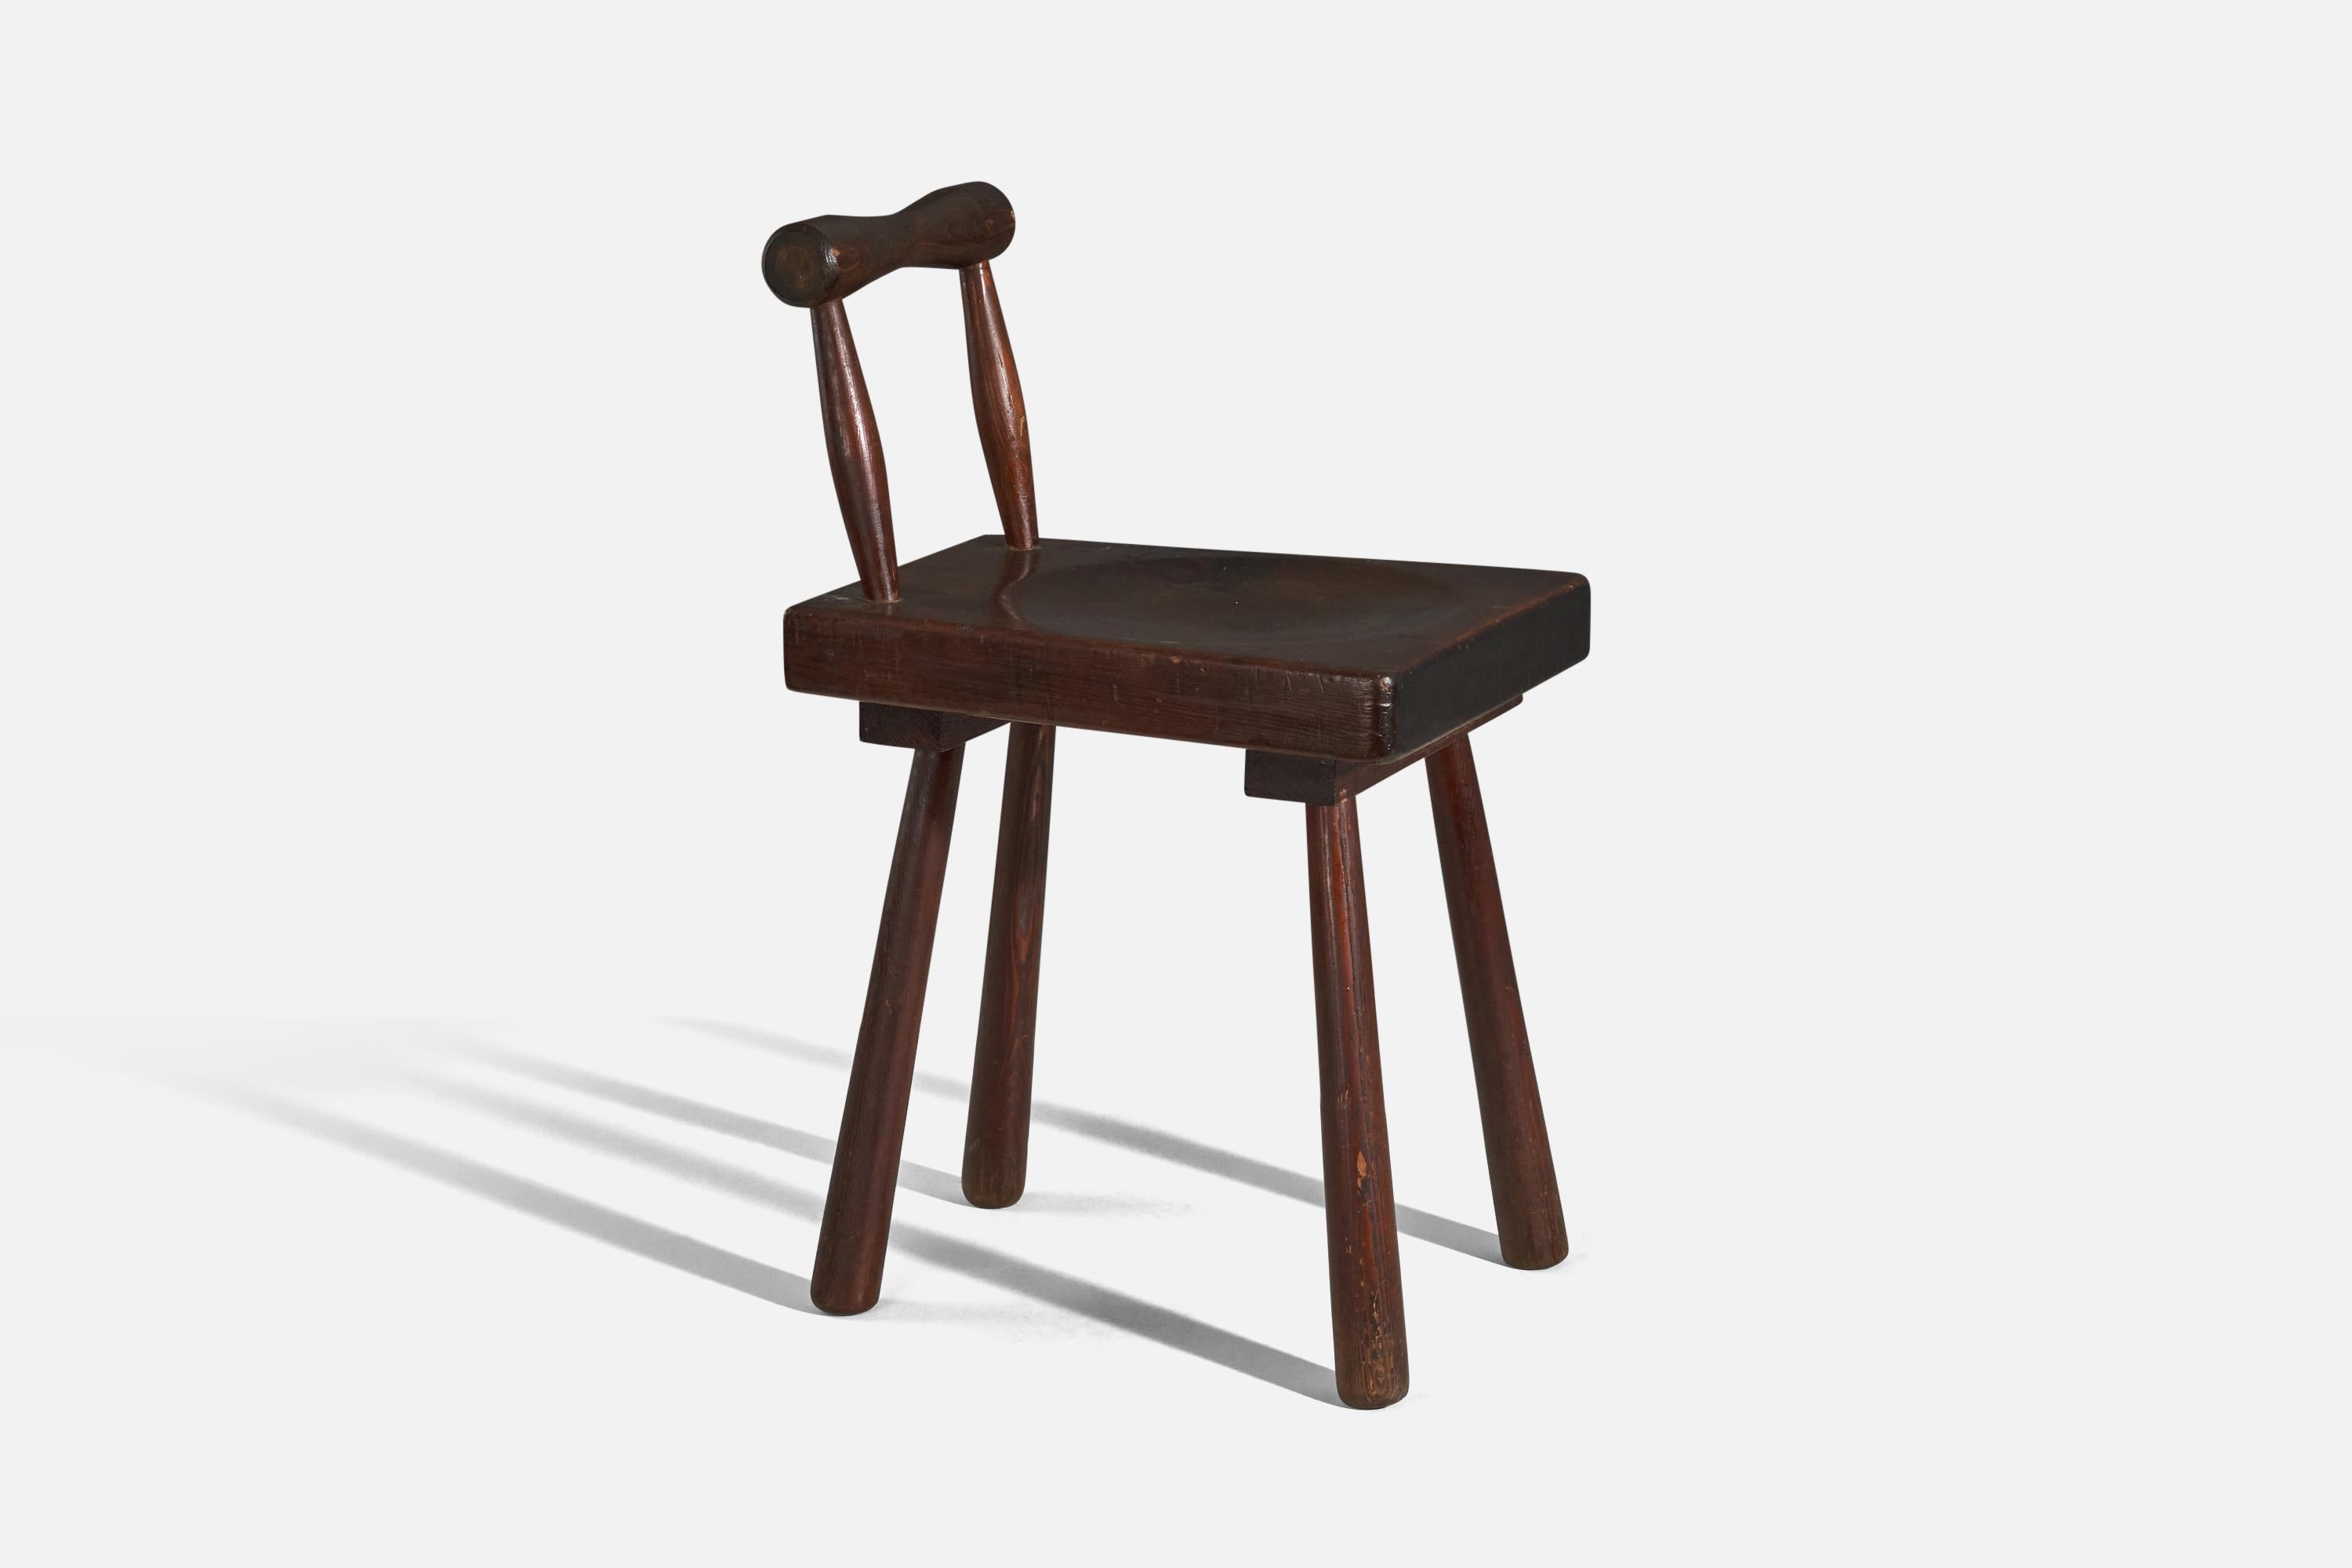 Ein Hocker oder Beistellstuhl aus Holz, entworfen und hergestellt in Frankreich, 1950er Jahre.

